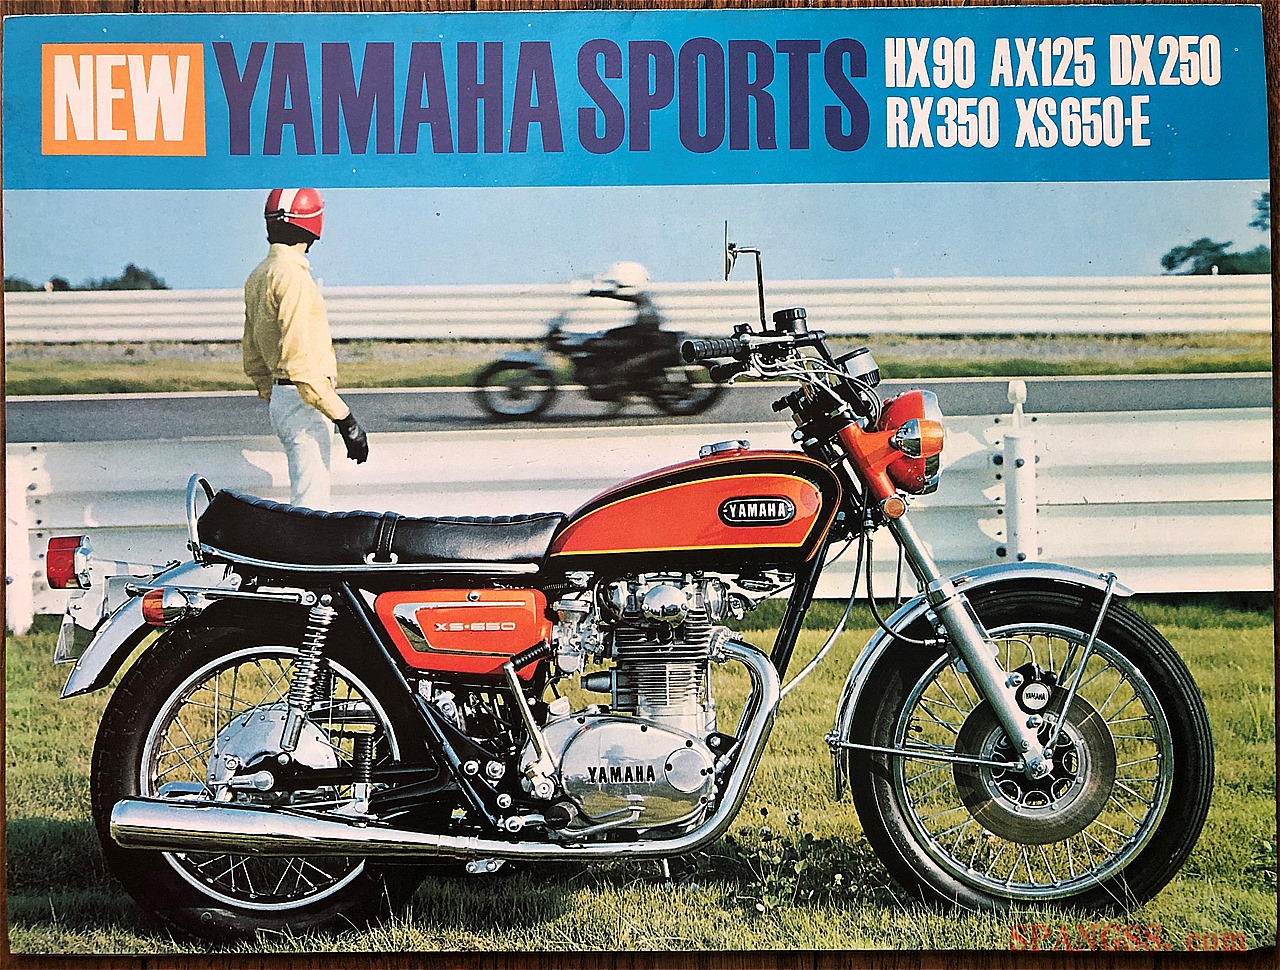 旧車・絶版車】1970年代初頭 ヤマハは 4ストも2ストもスポーツモデルの